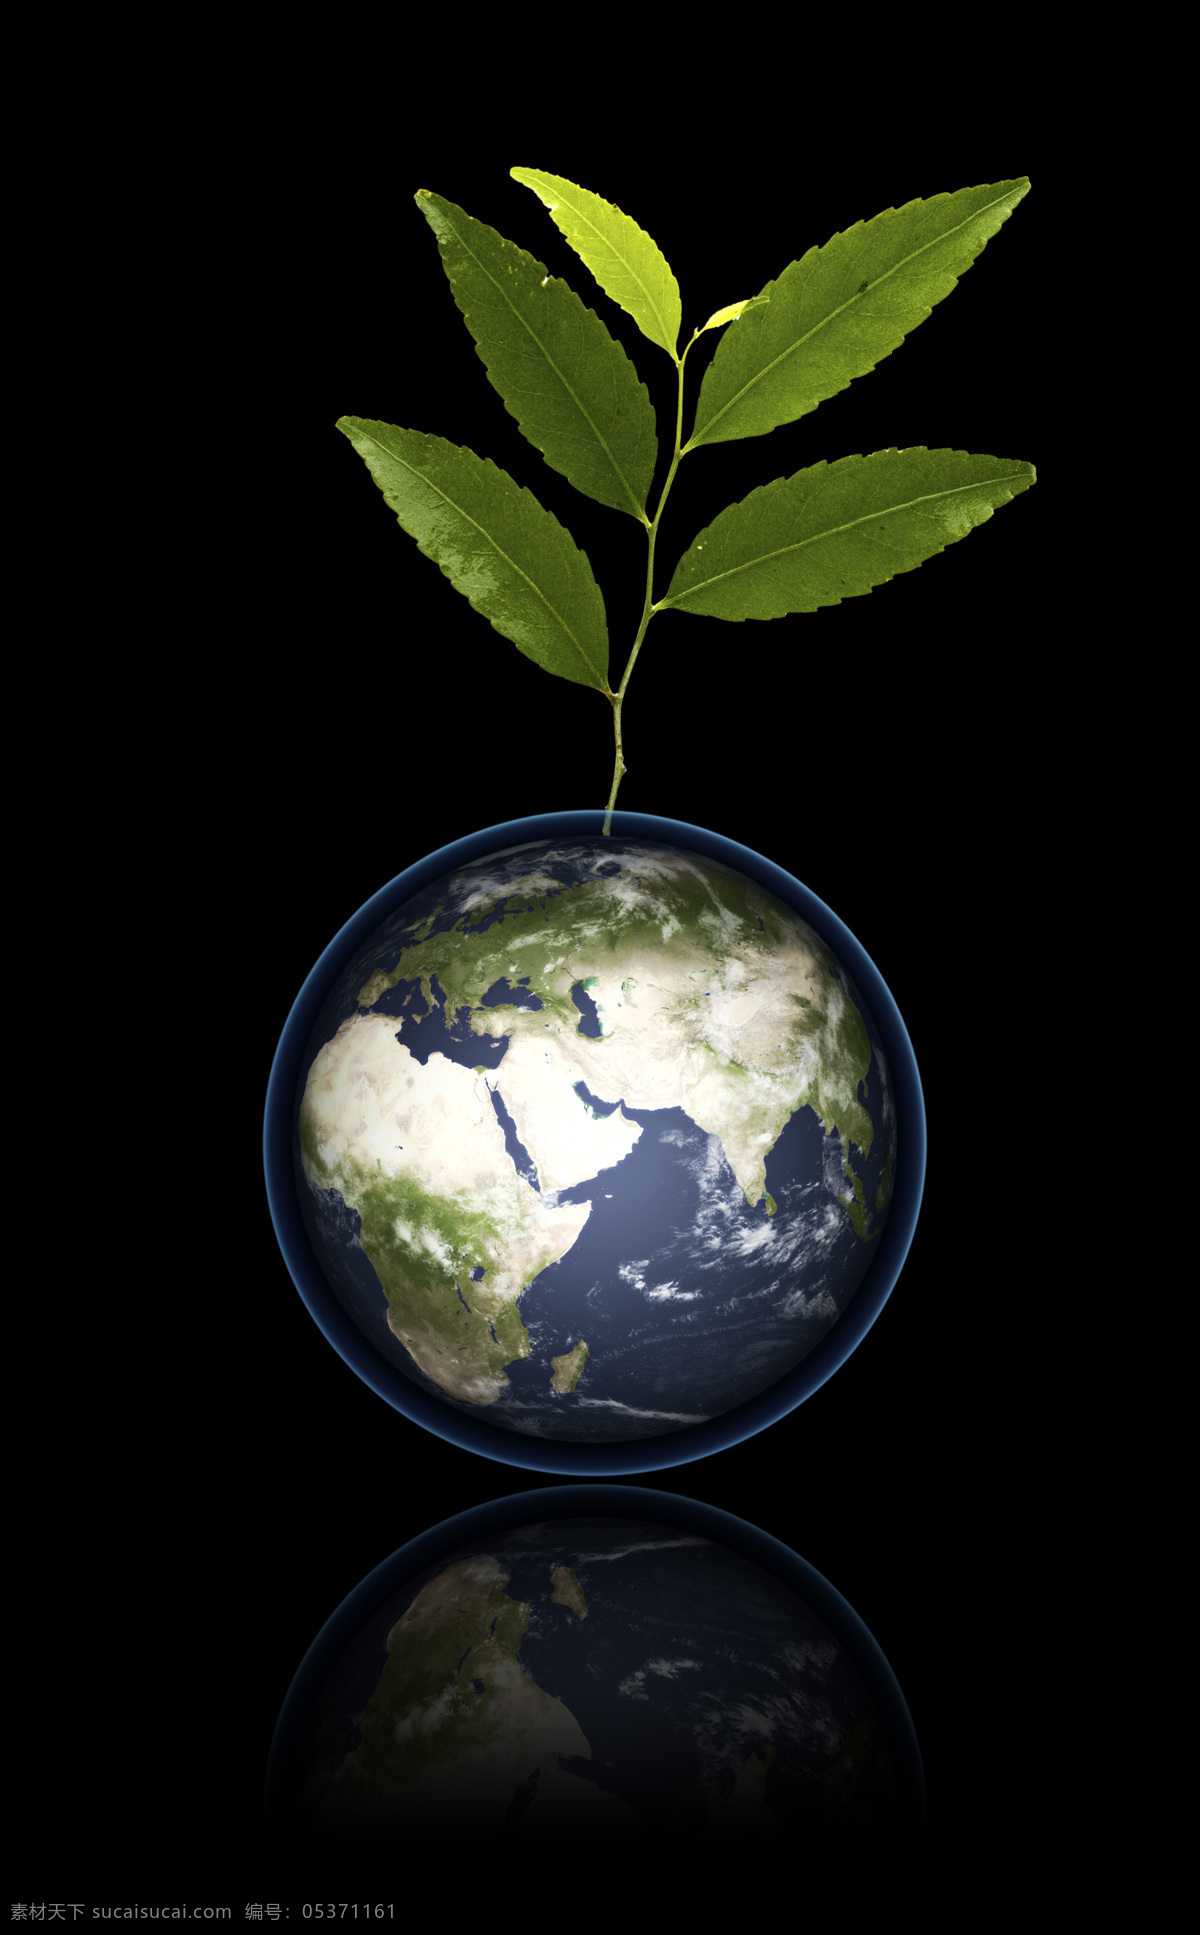 低碳环保地球 绿色地球 绿叶 地球 绿色 环保 生命 保护地球 生态 蓝色星球 世界 低碳环保 创意设计